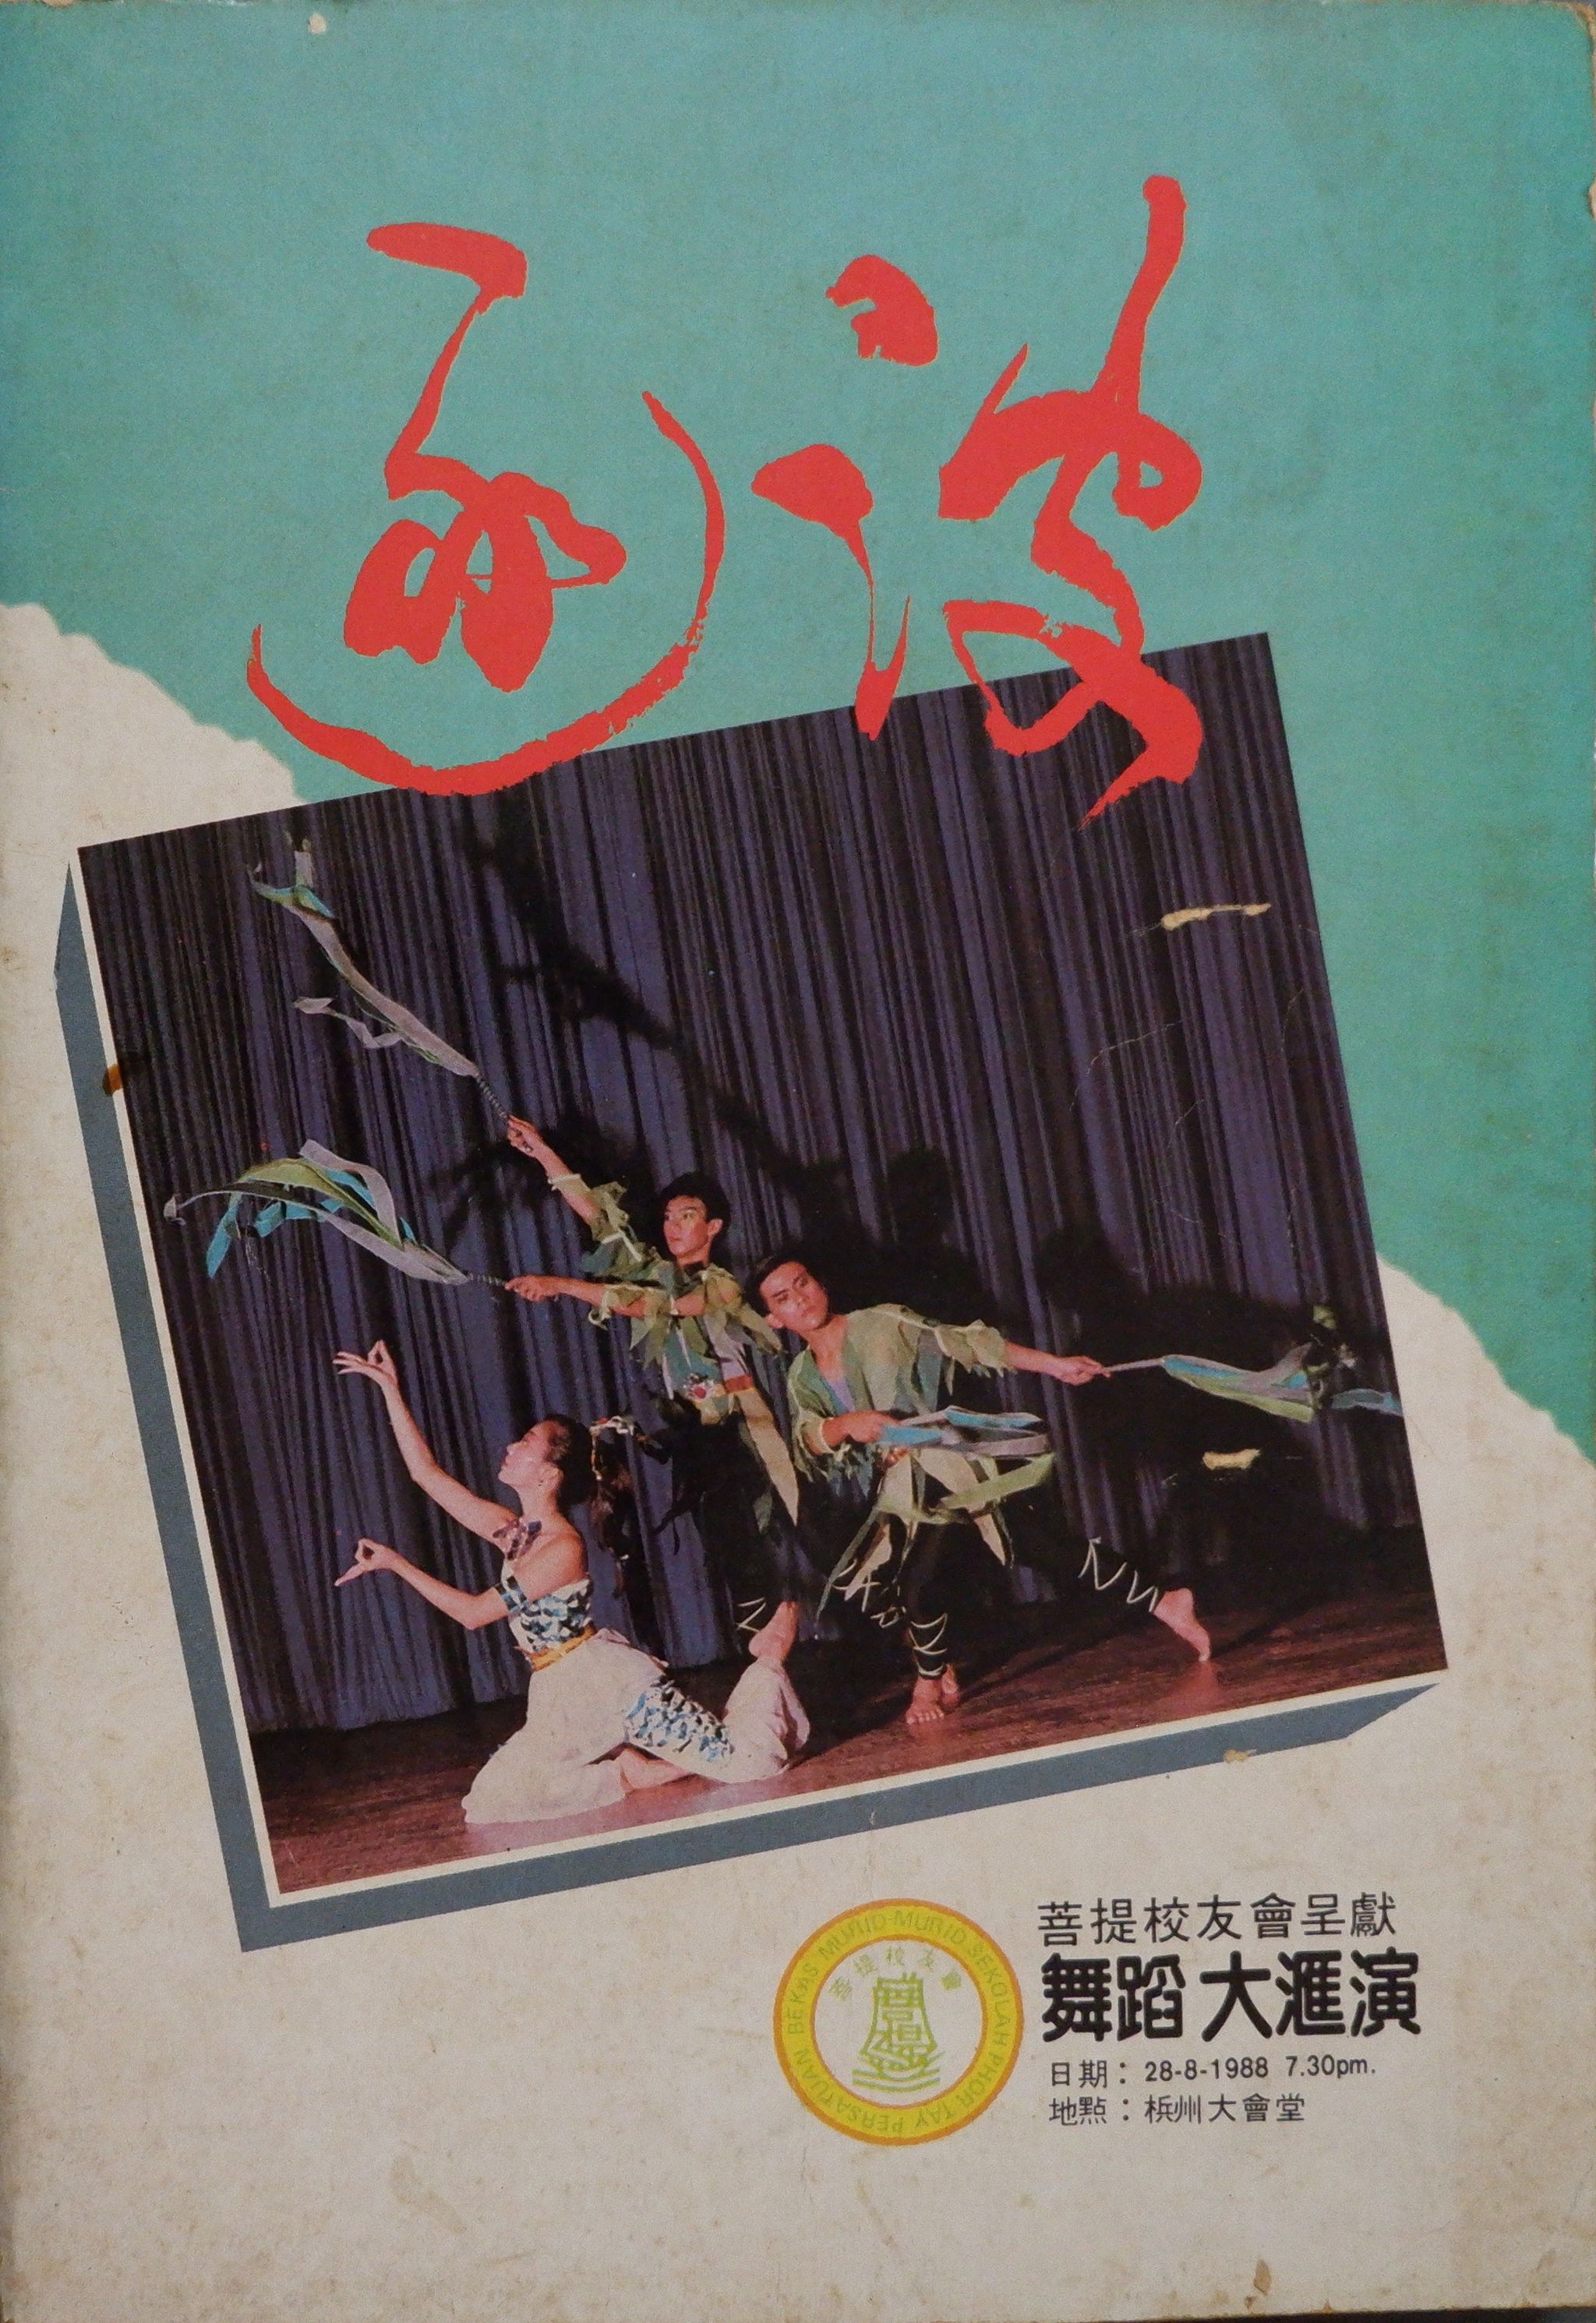 1988 Zhu Bo Dance Gala Cover